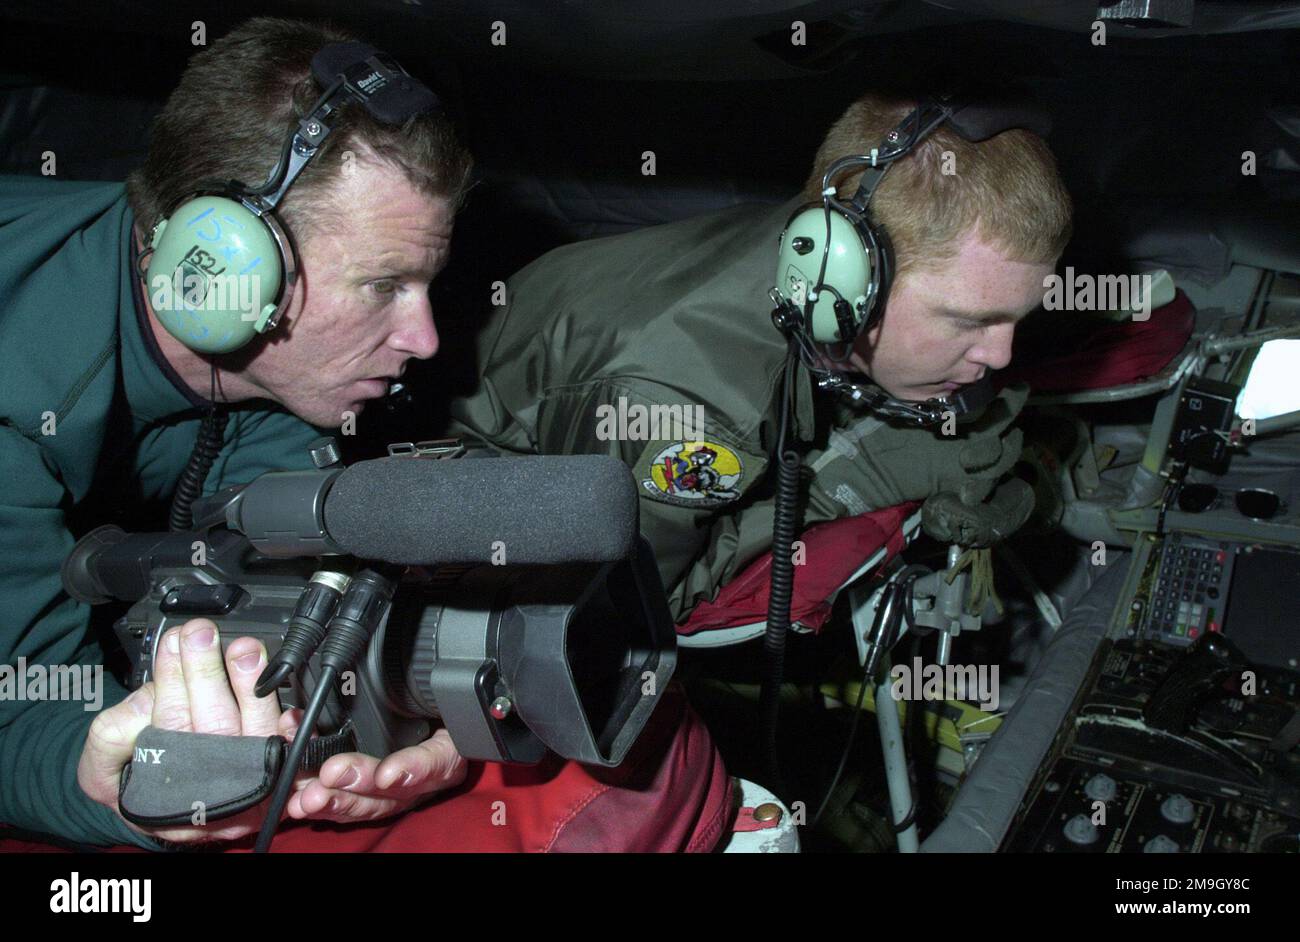 Der KTUU-Fotojournalist Tom Cole (links) und SENIOR AIRMAN (SRA) Jeremy Vancil, SPEZIALIST für Luftbetankung an Bord, erwarten die Ankunft eines Flugzeugs, um mit dem Betanken aus dem KC-135R Stratotanker zu beginnen. SRA Vancil ist ein traditioneller Wachmann mit dem 168. Air Tanken Squadron und aktiviert, um zusätzliche qualifizierte Arbeitskräfte aufgrund der verstärkten Aktivität für die Operation NOBLE EAGLE bereitzustellen. SRA Vancil ist Junior an der University of Alaska, Fairbanks, wo seine Professoren seinen Zeitplan einhalten, damit er seine Ausbildung fortsetzen und gleichzeitig die Bedürfnisse des Landes erfüllen kann. Der Medienfluginitiat Stockfoto